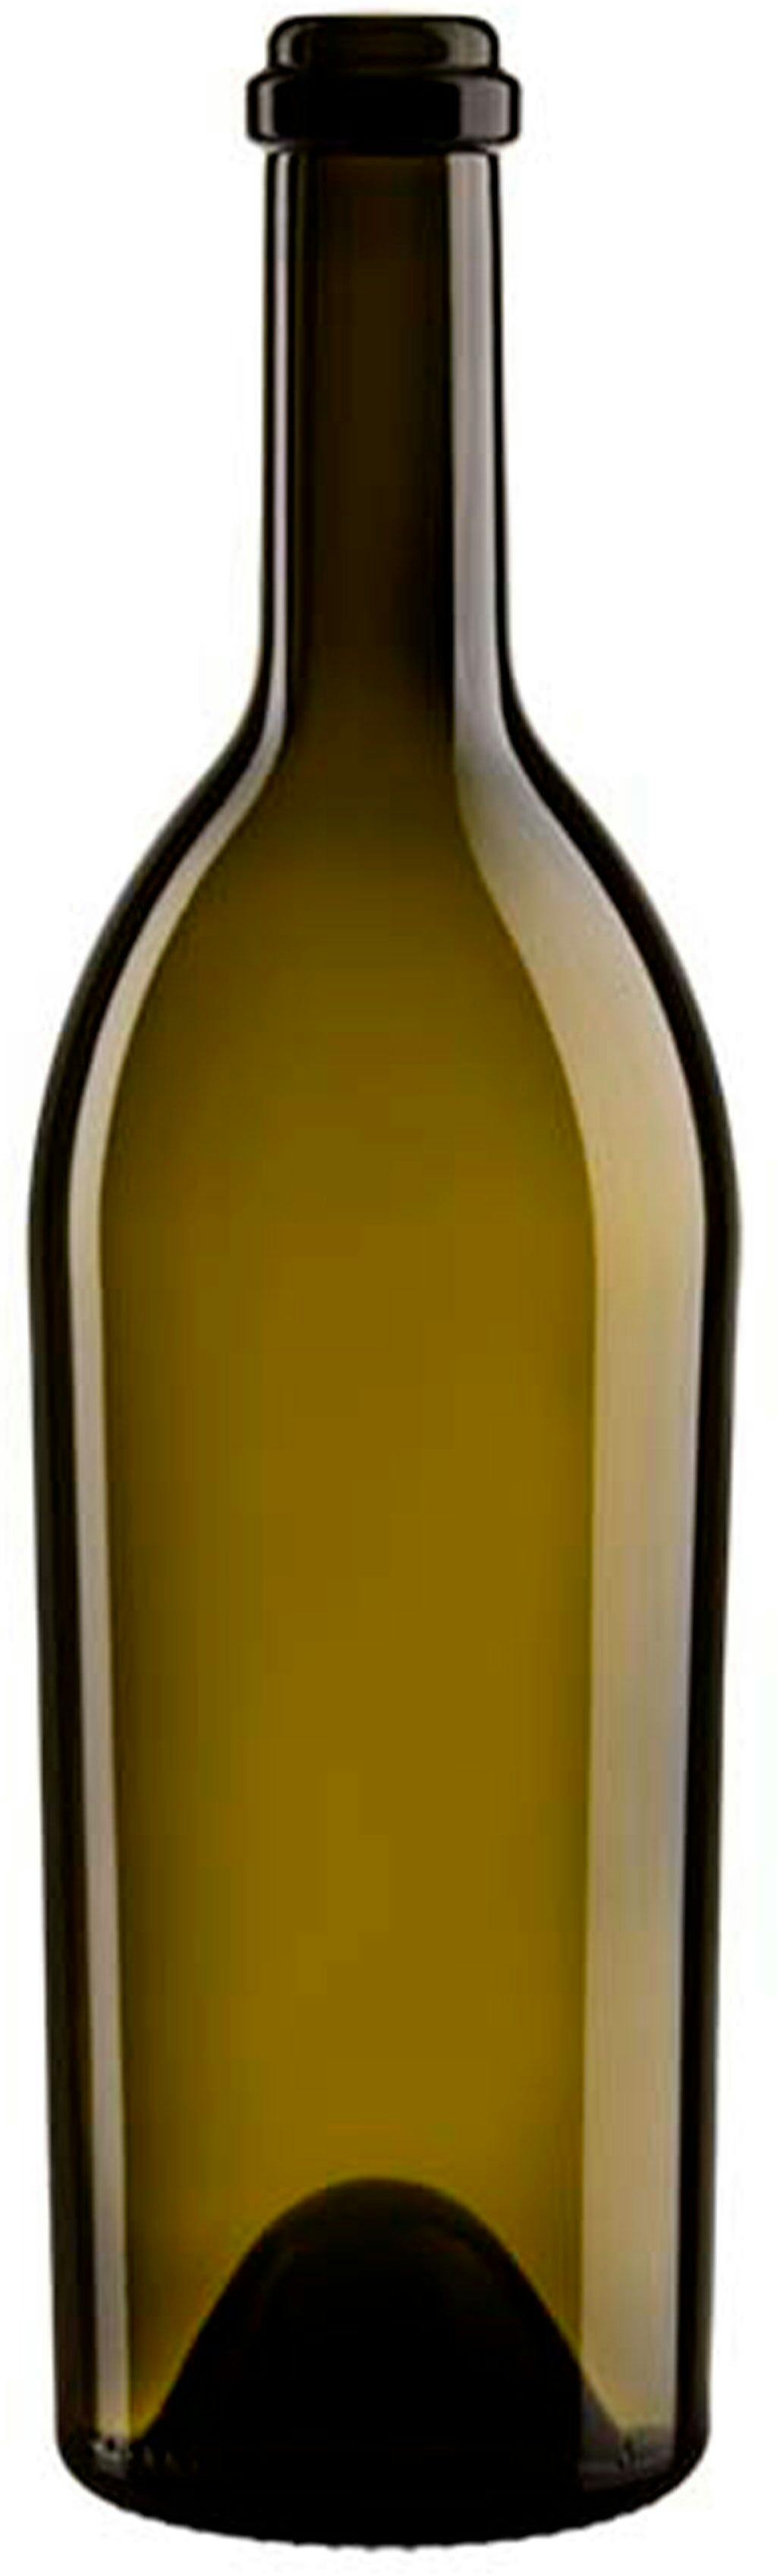 Bottle BORGOÑA  LATINA 750 ml BG-Cork